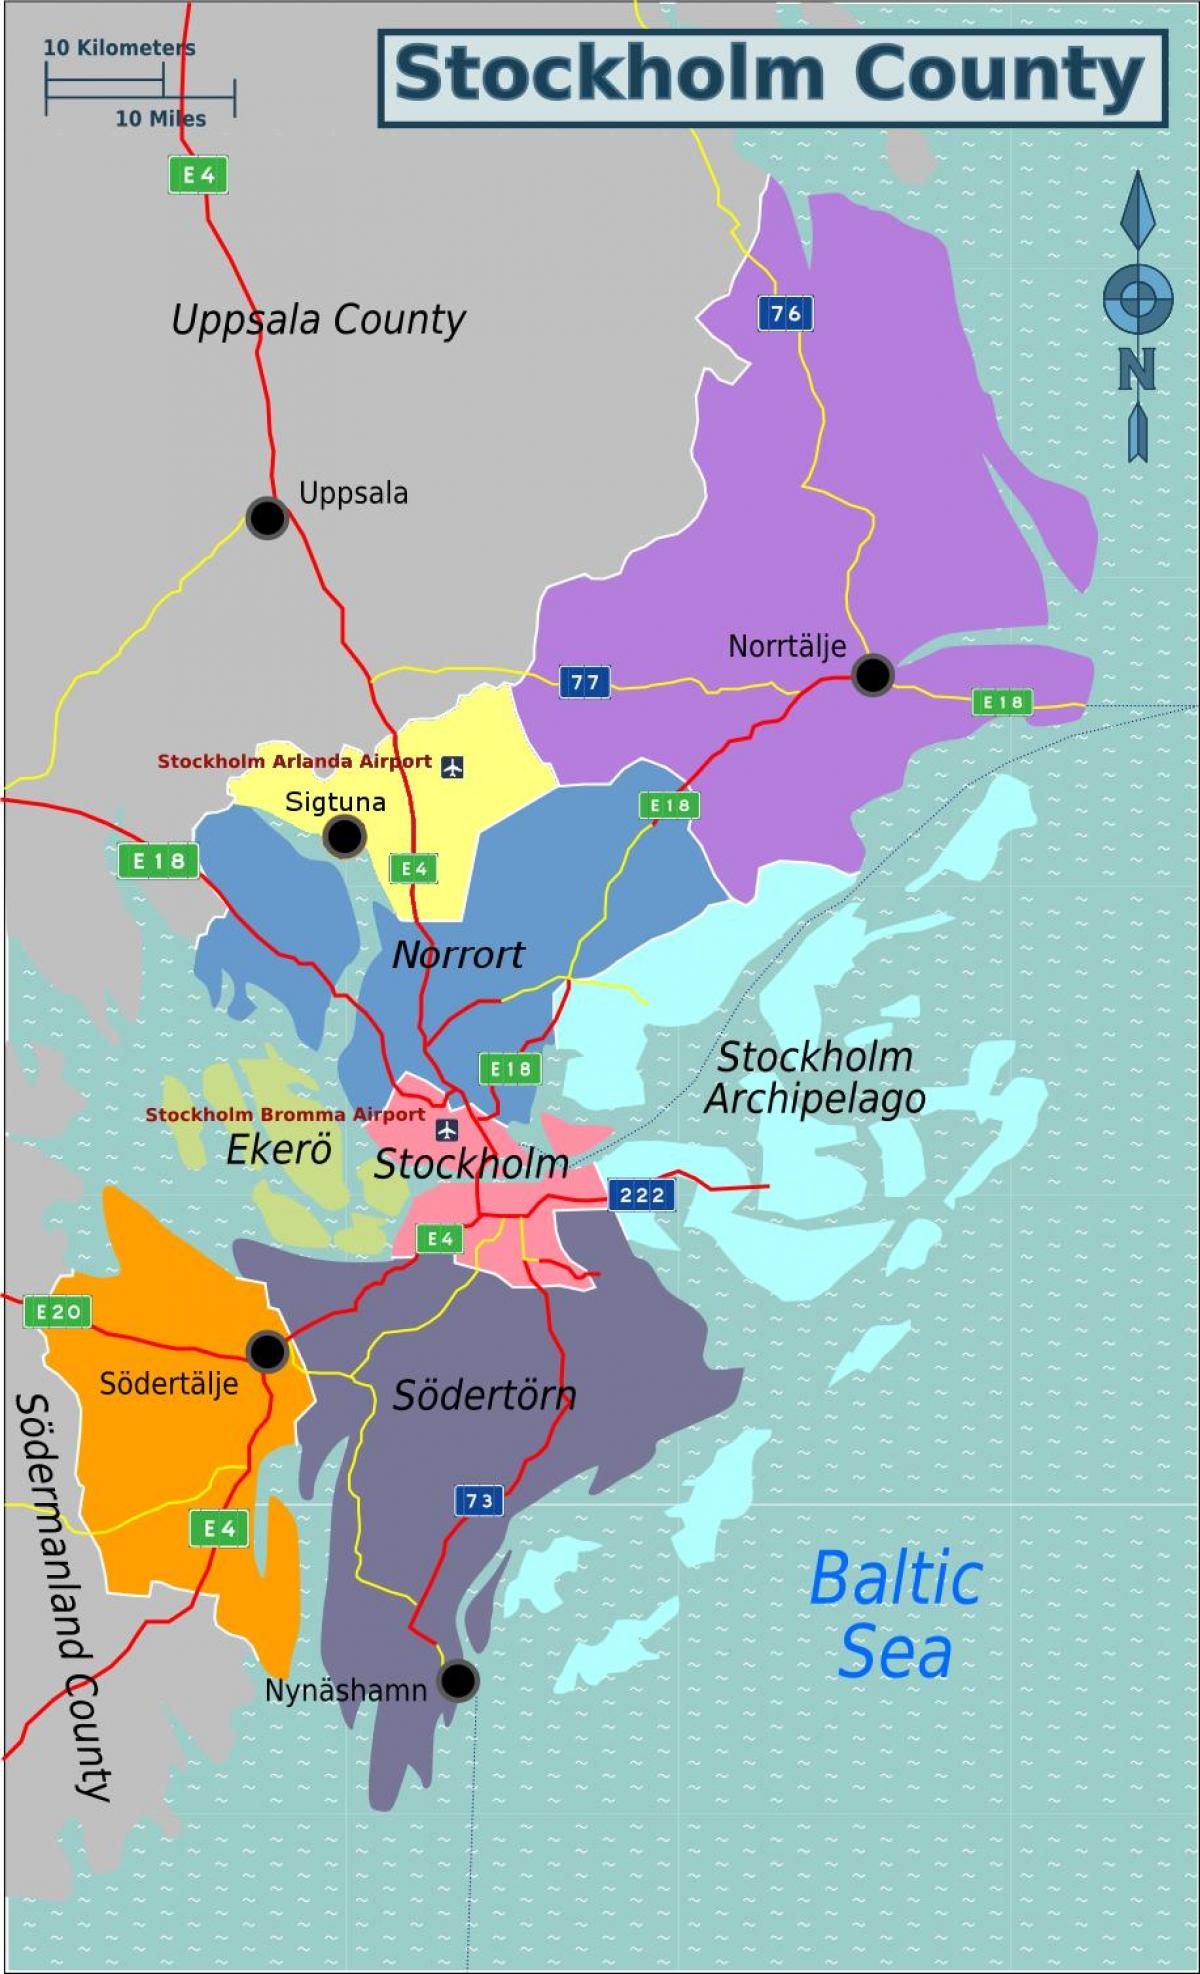 χάρτης της Στοκχόλμης τη Σουηδία περιοχή